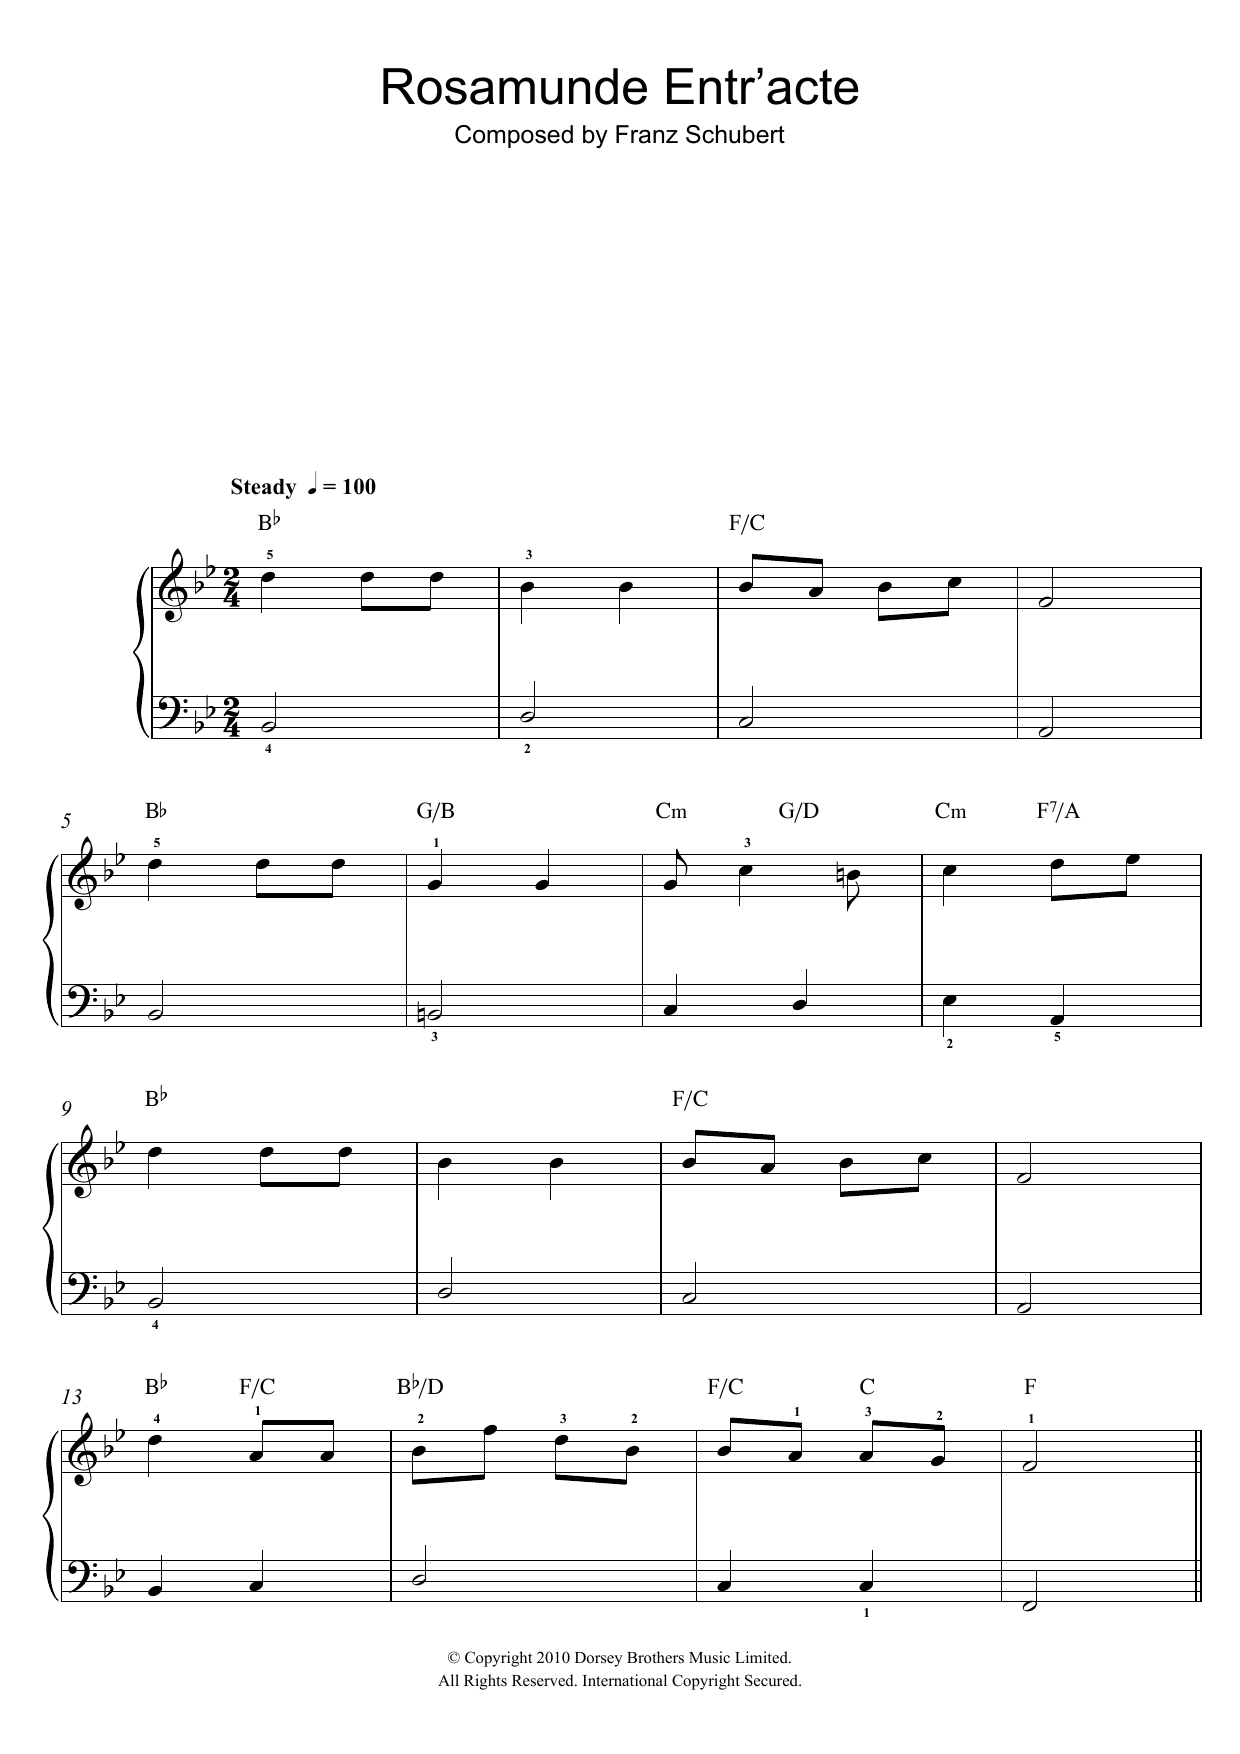 Franz Schubert Rosamunde Entr'acte Sheet Music Notes & Chords for Violin - Download or Print PDF